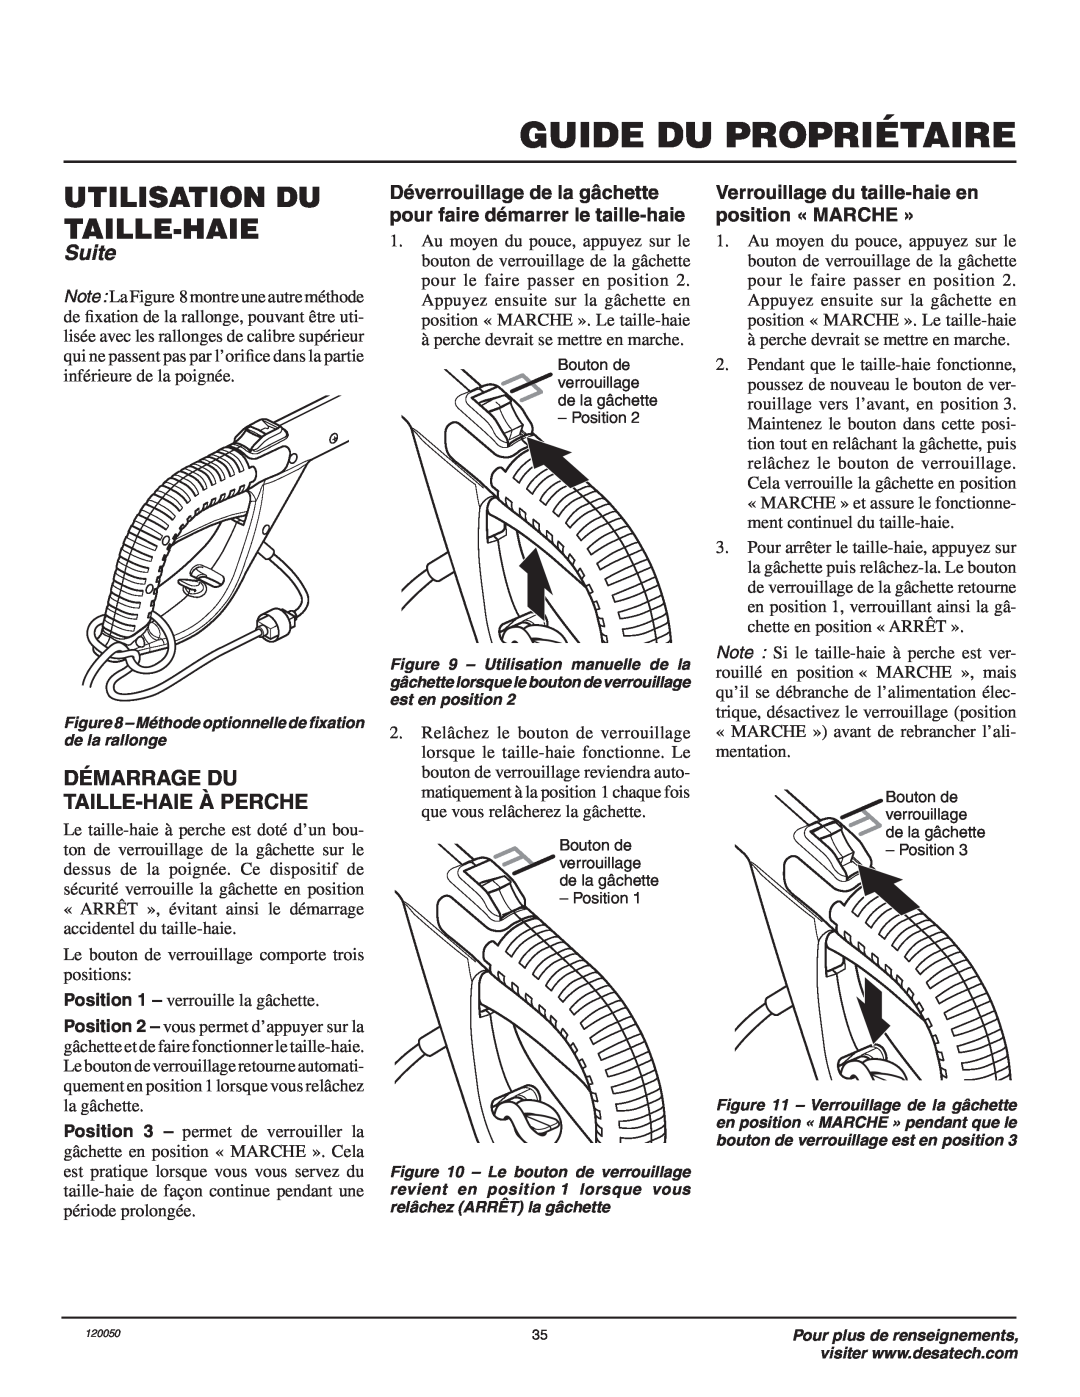 Remington AT3017BCA owner manual Guide Du Propriétaire, Utilisation Du Taille-Haie, Suite, Démarrage Du Taille-Haieà Perche 